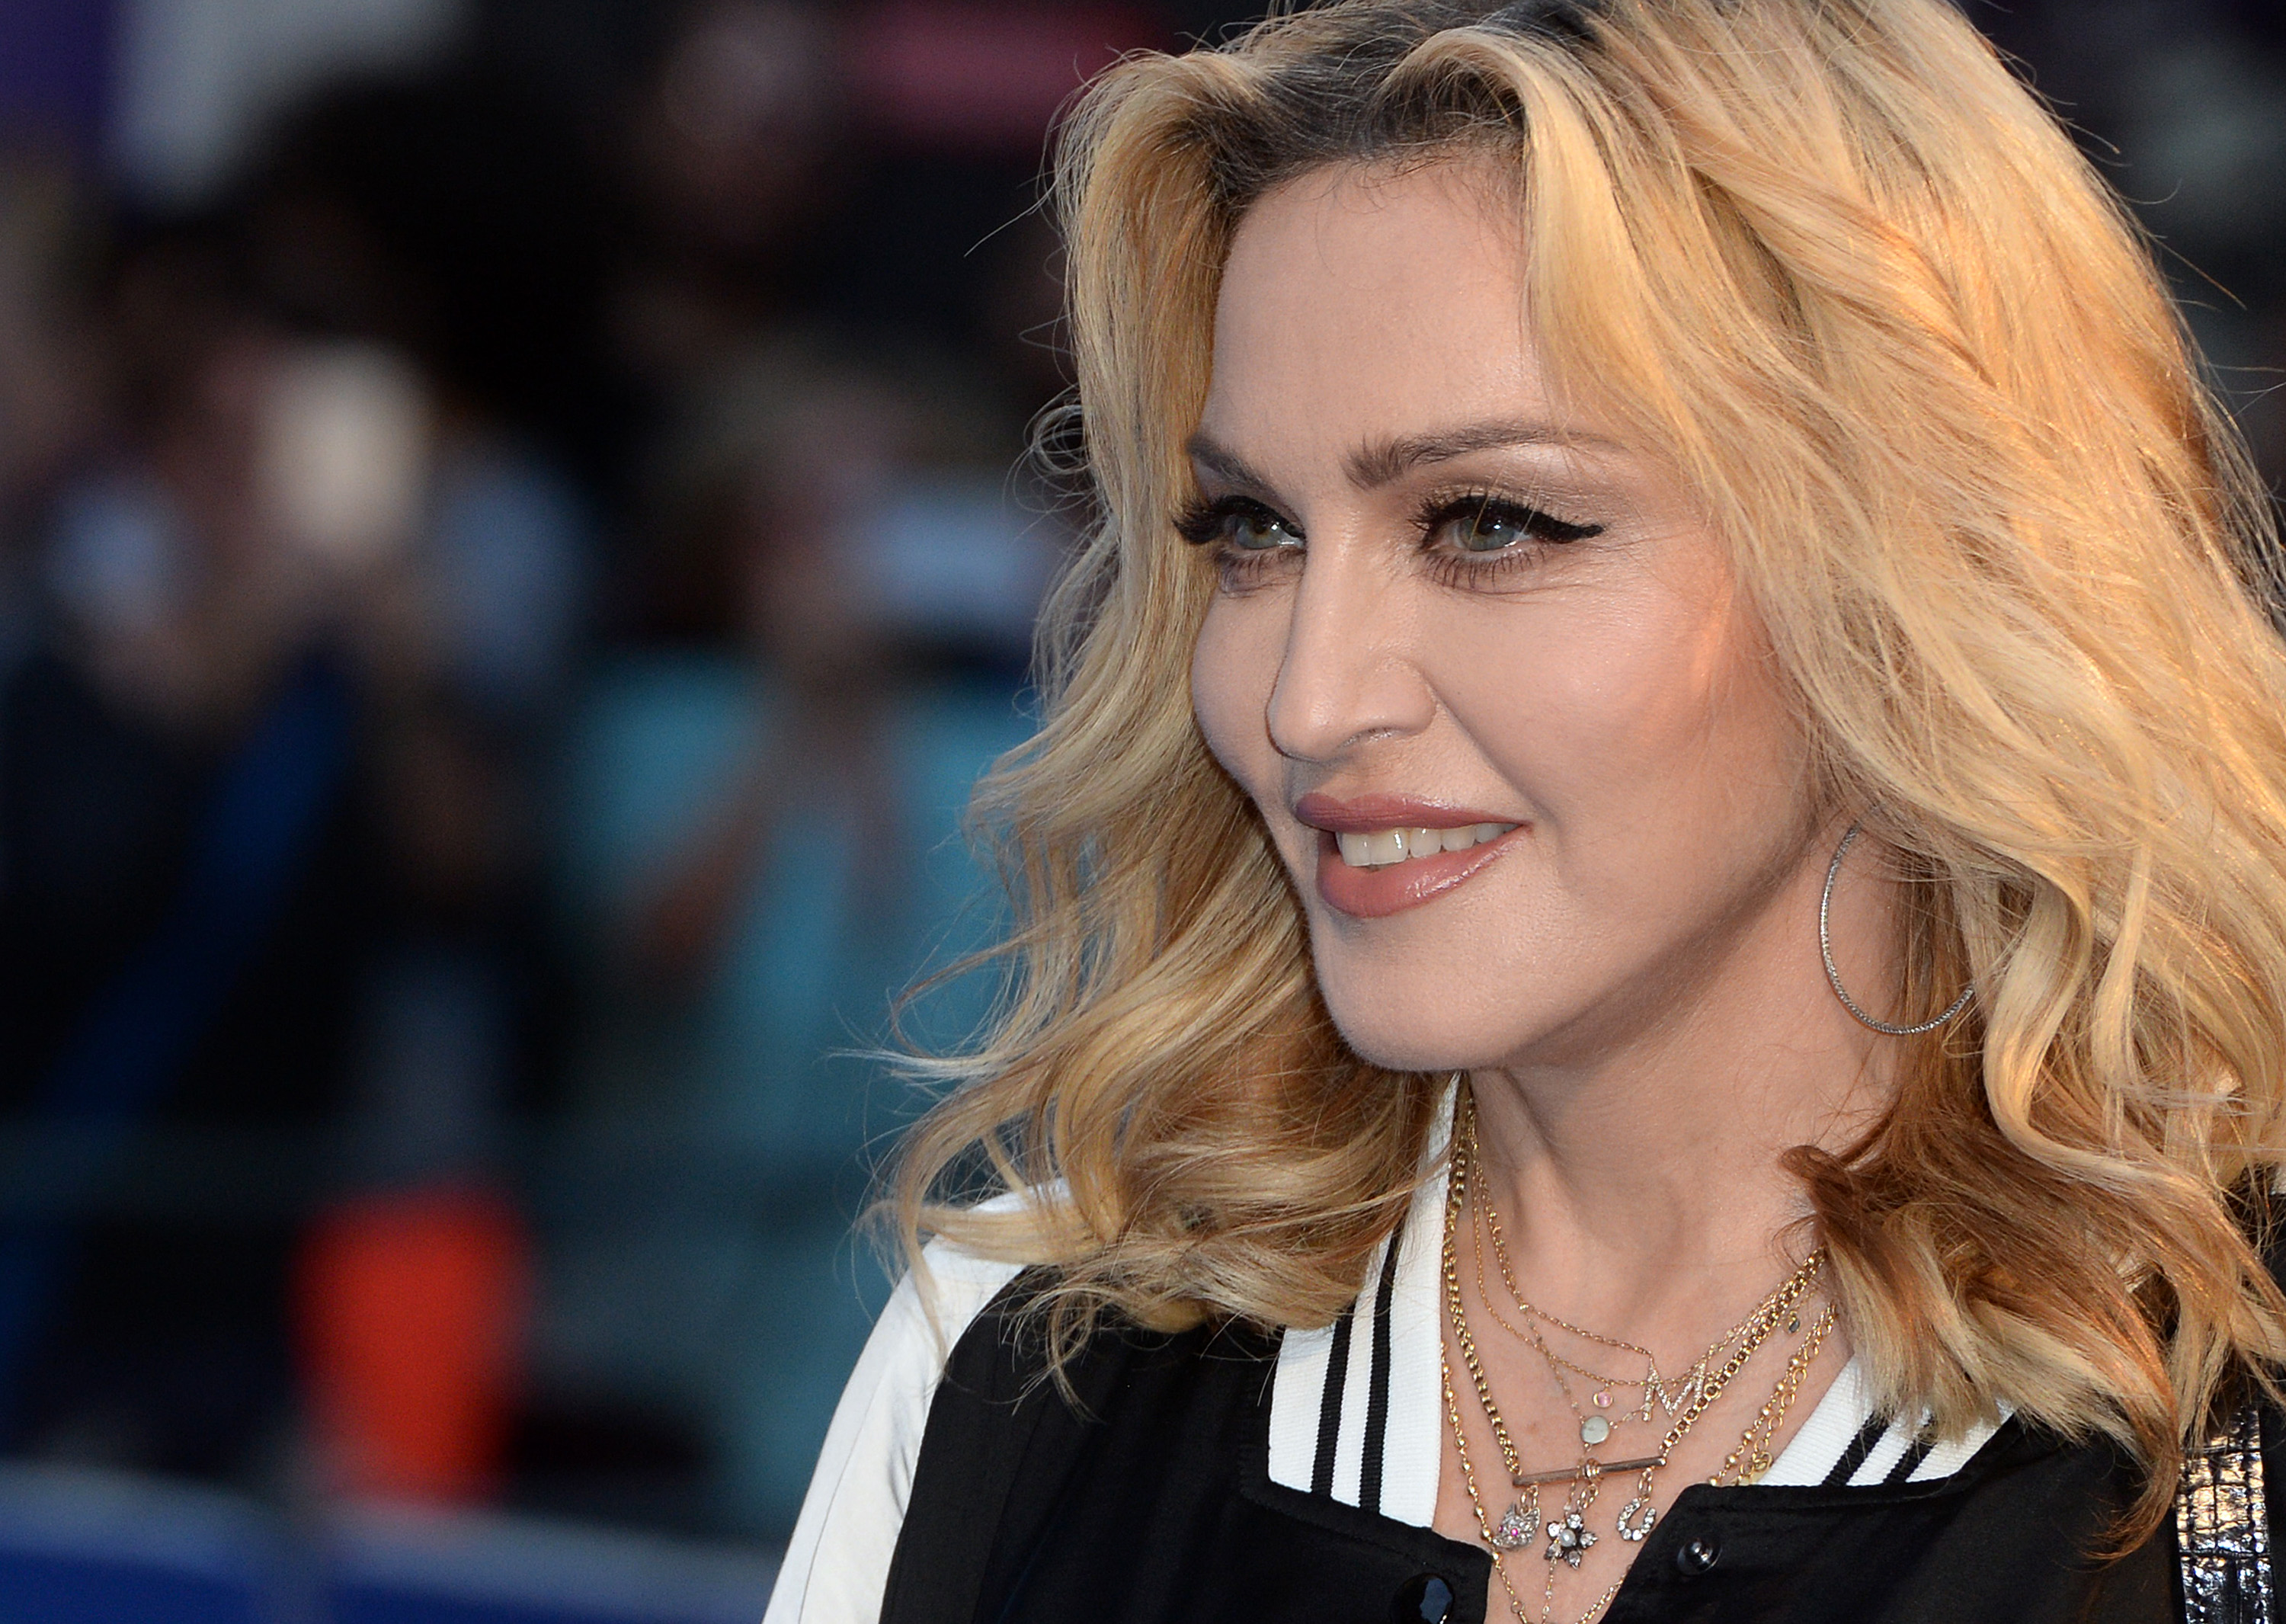 Madonna en el estreno mundial de "The Beatles: Eight Days A Week - The Touring Years" en Londres, Inglaterra, el 15 de septiembre de 2016 | Fuente: Getty Images